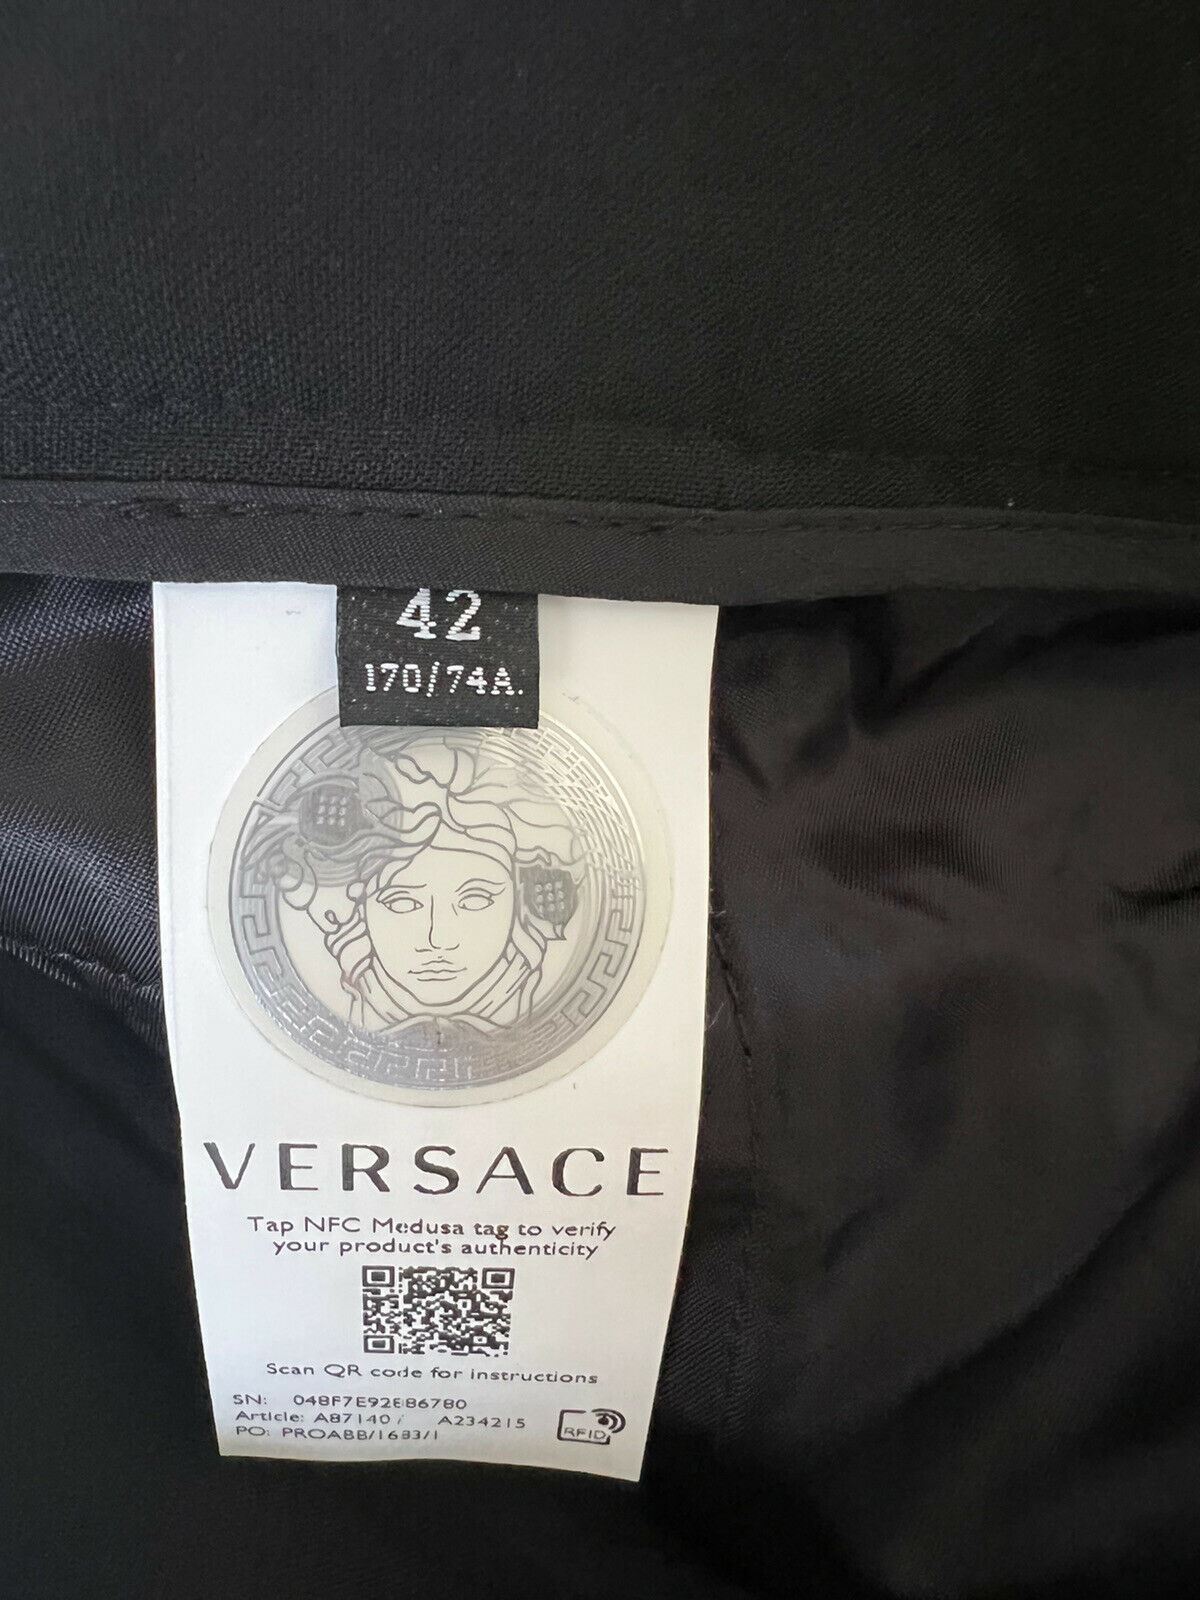 Neu mit Etikett: 1525 $ Versace Damen-Wollhose mit mehreren Reißverschlüssen in Schwarz 8 US (42 Euro) A87140 IT 